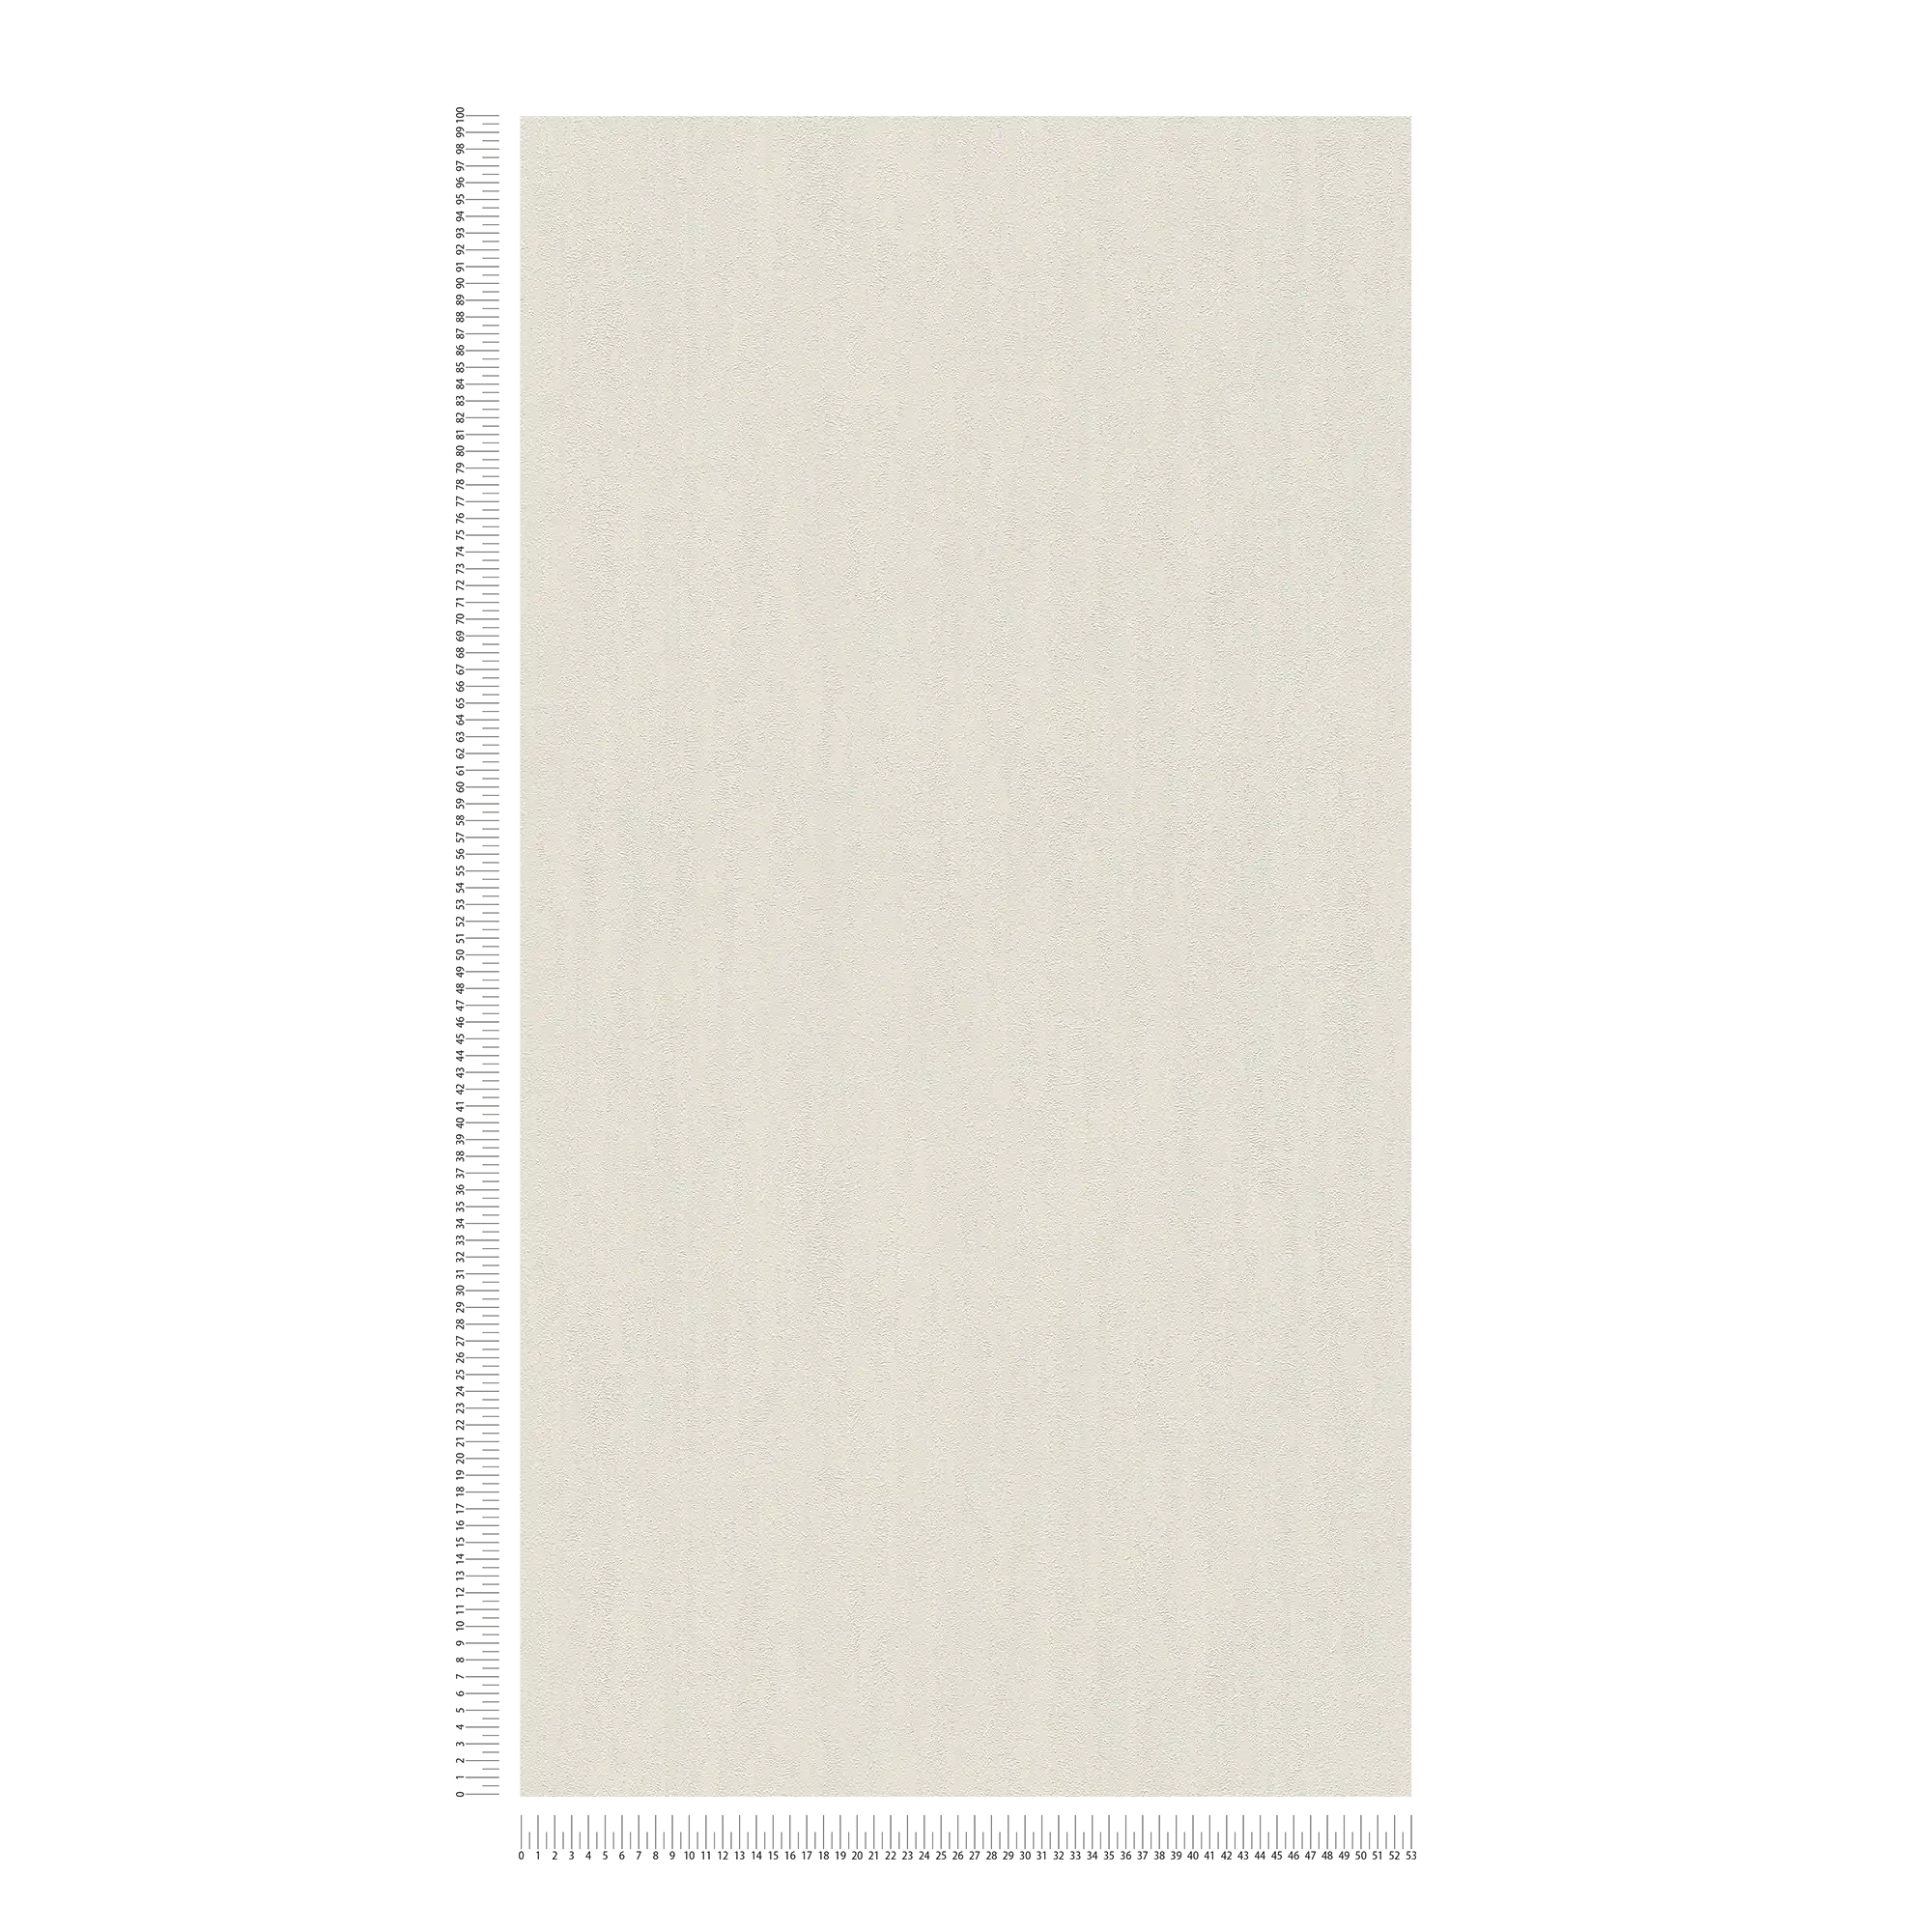             Carta da parati beige chiaro con struttura a rilievo naturale in look gesso
        